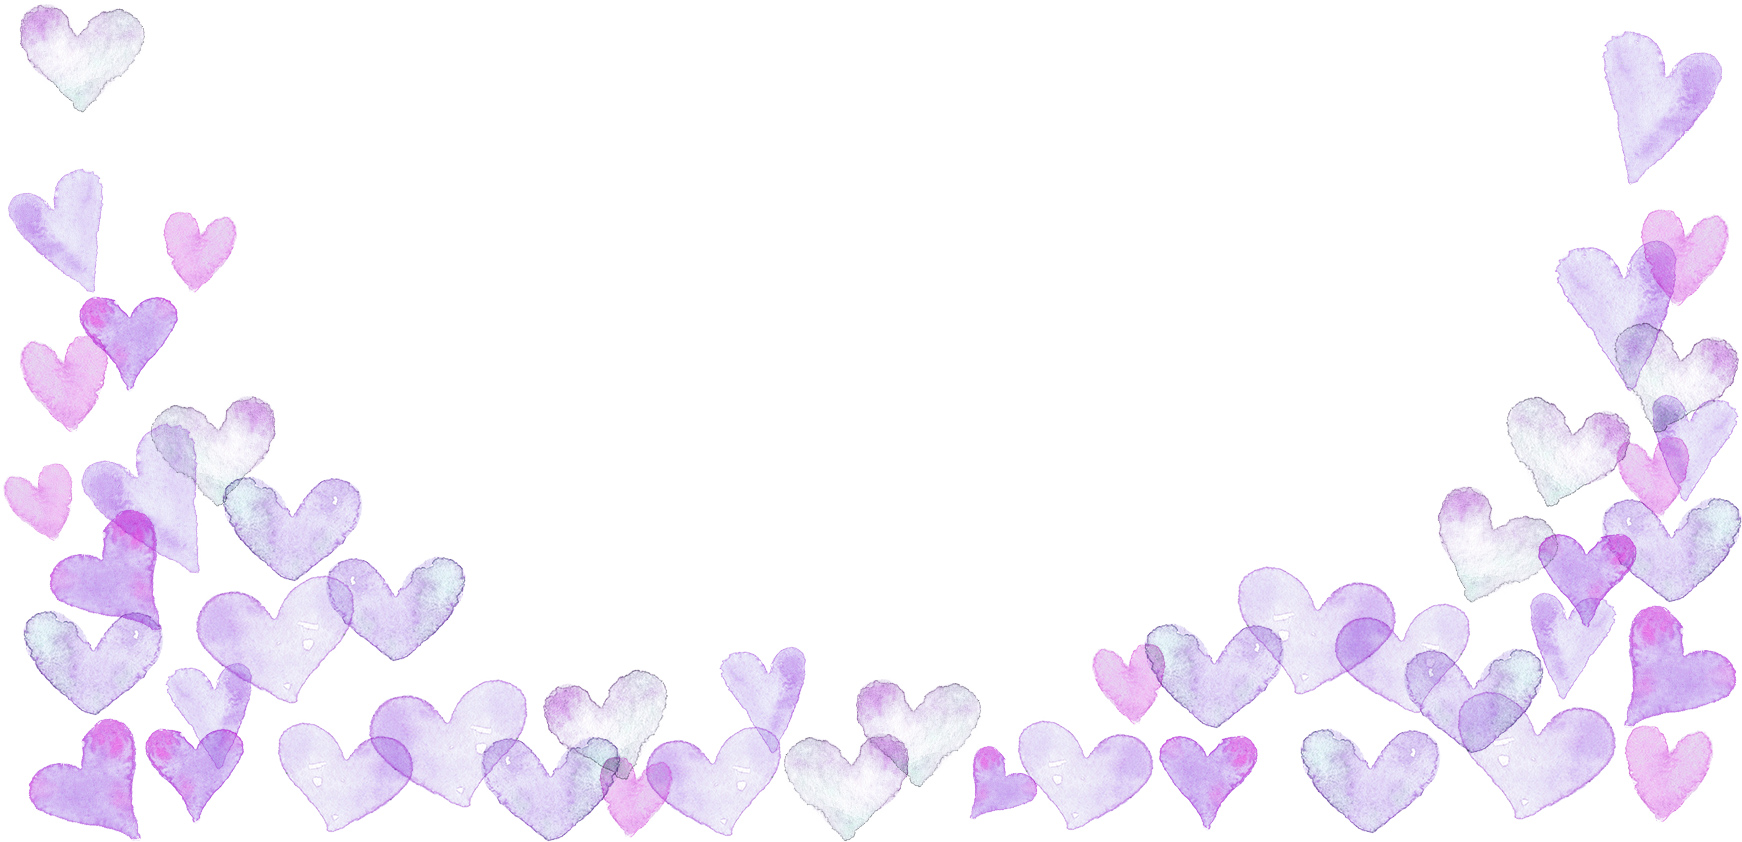 手書きイラスト無料 水彩 ハート 背景 下部 紫色 公式 イラスト素材サイト イラストダウンロード